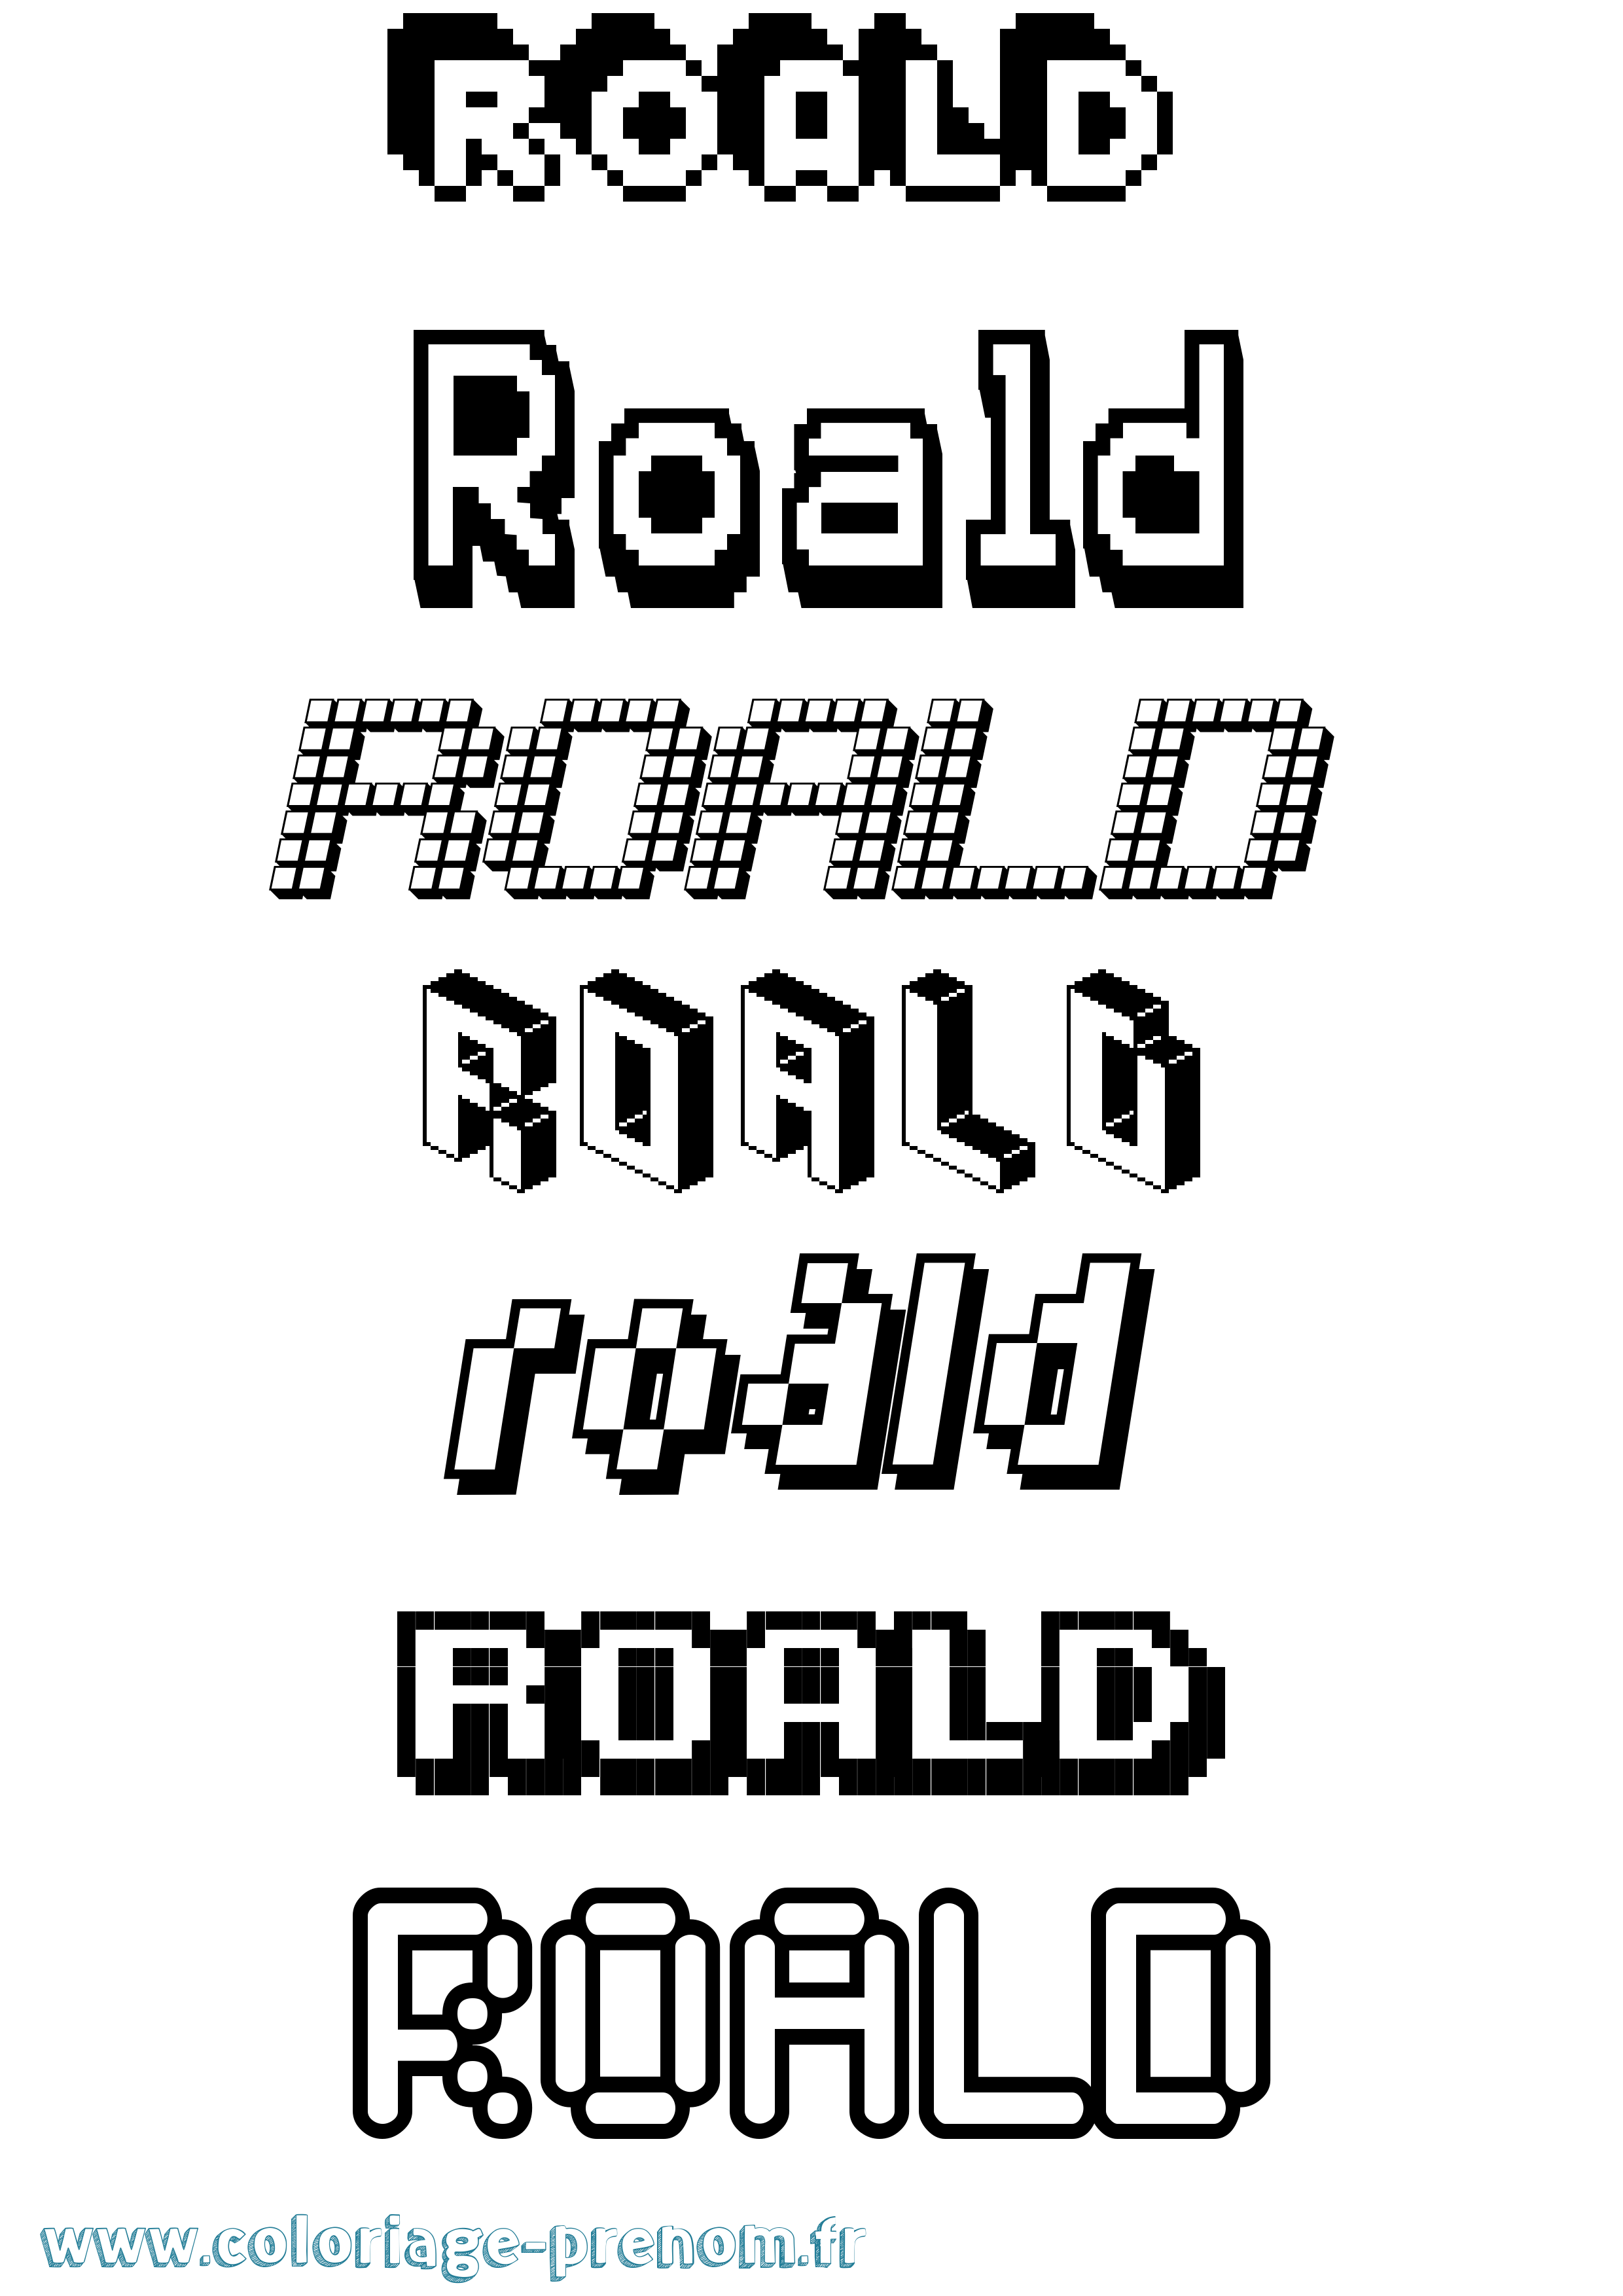 Coloriage prénom Roald Pixel